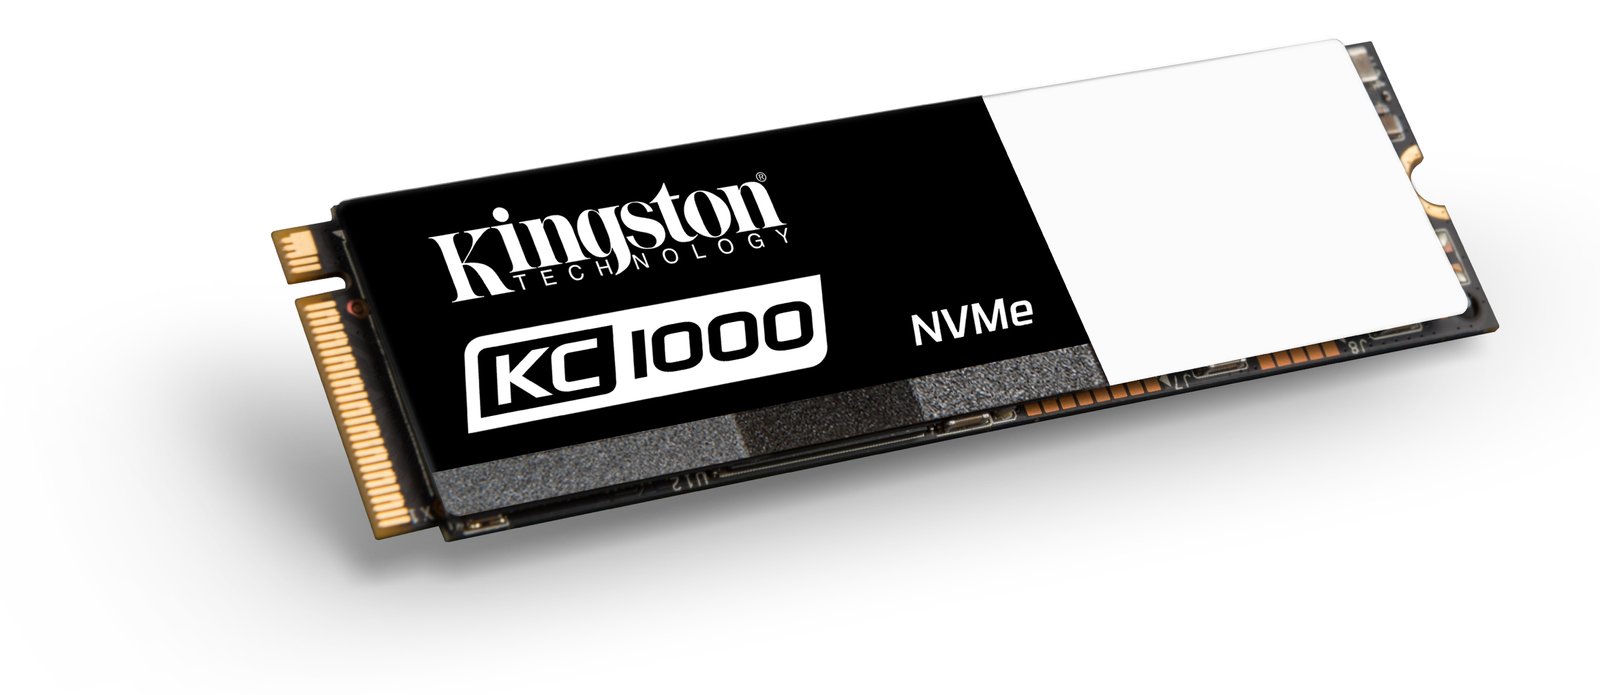 Kingston Intros KC1000 NVMe PCIe SSD